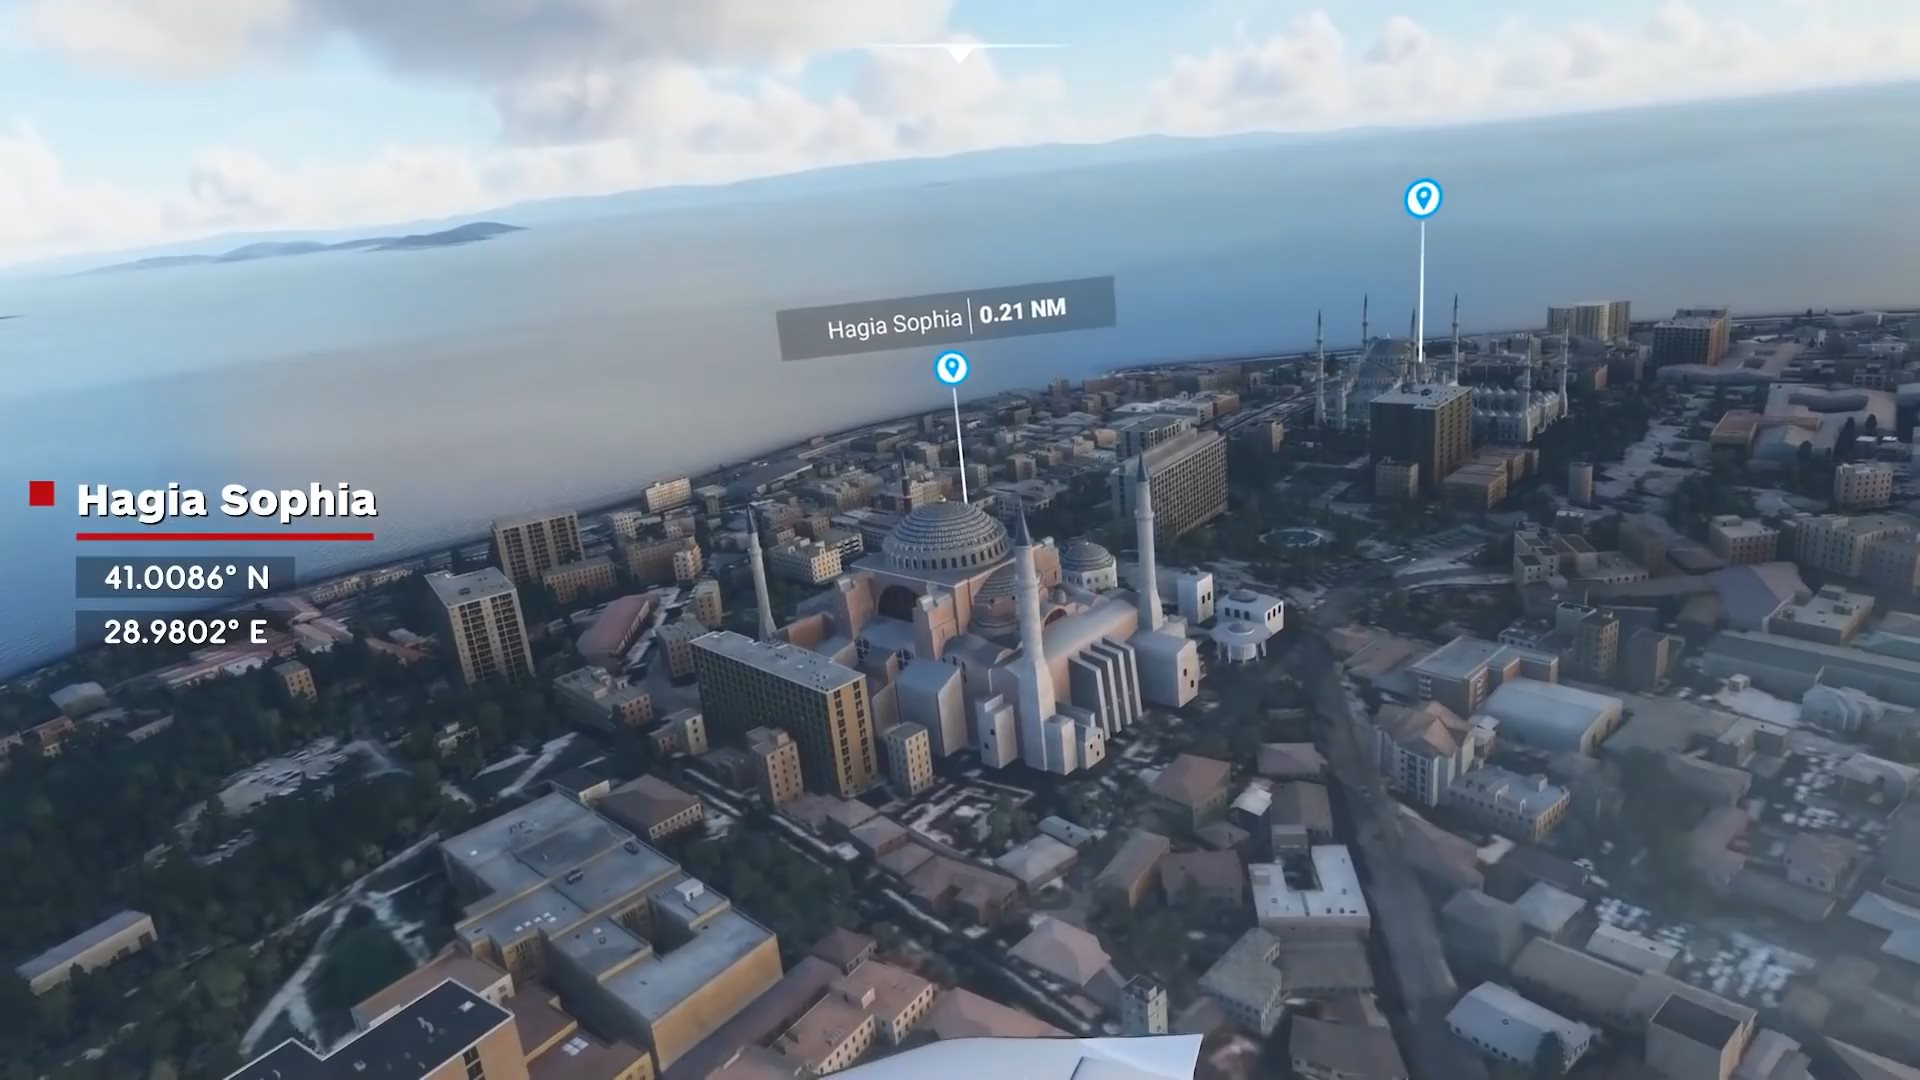 《微軟飛行模擬》實機演示 飽覽全球14個知名地標風景